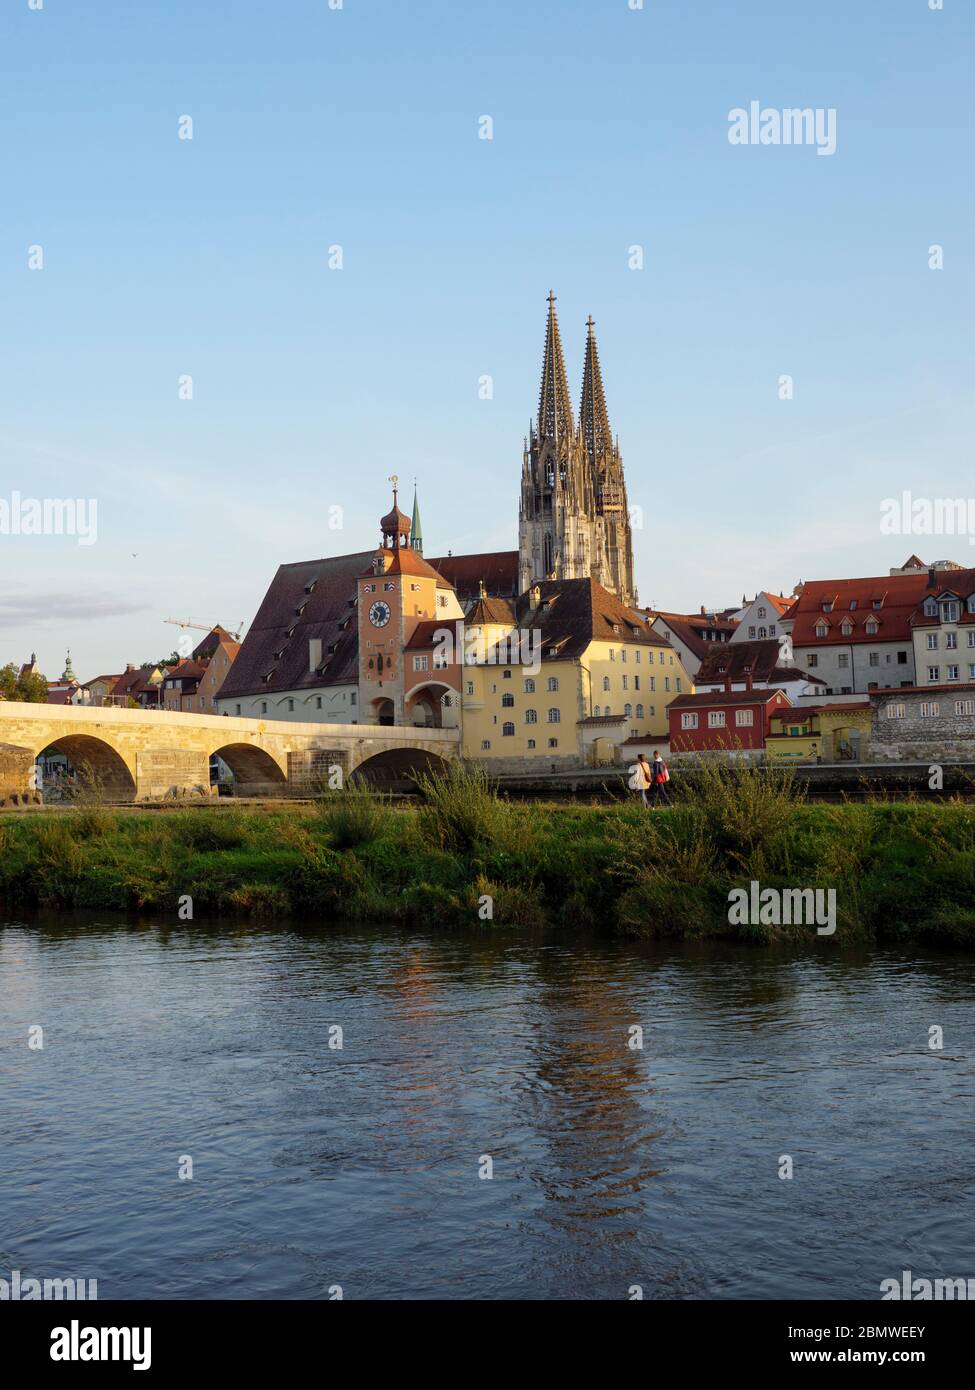 Steinerne Brücke, Donau, Altstadt von Regensburg mit Dom, Unesco Welterbe, Bayern, Deutschland Foto Stock